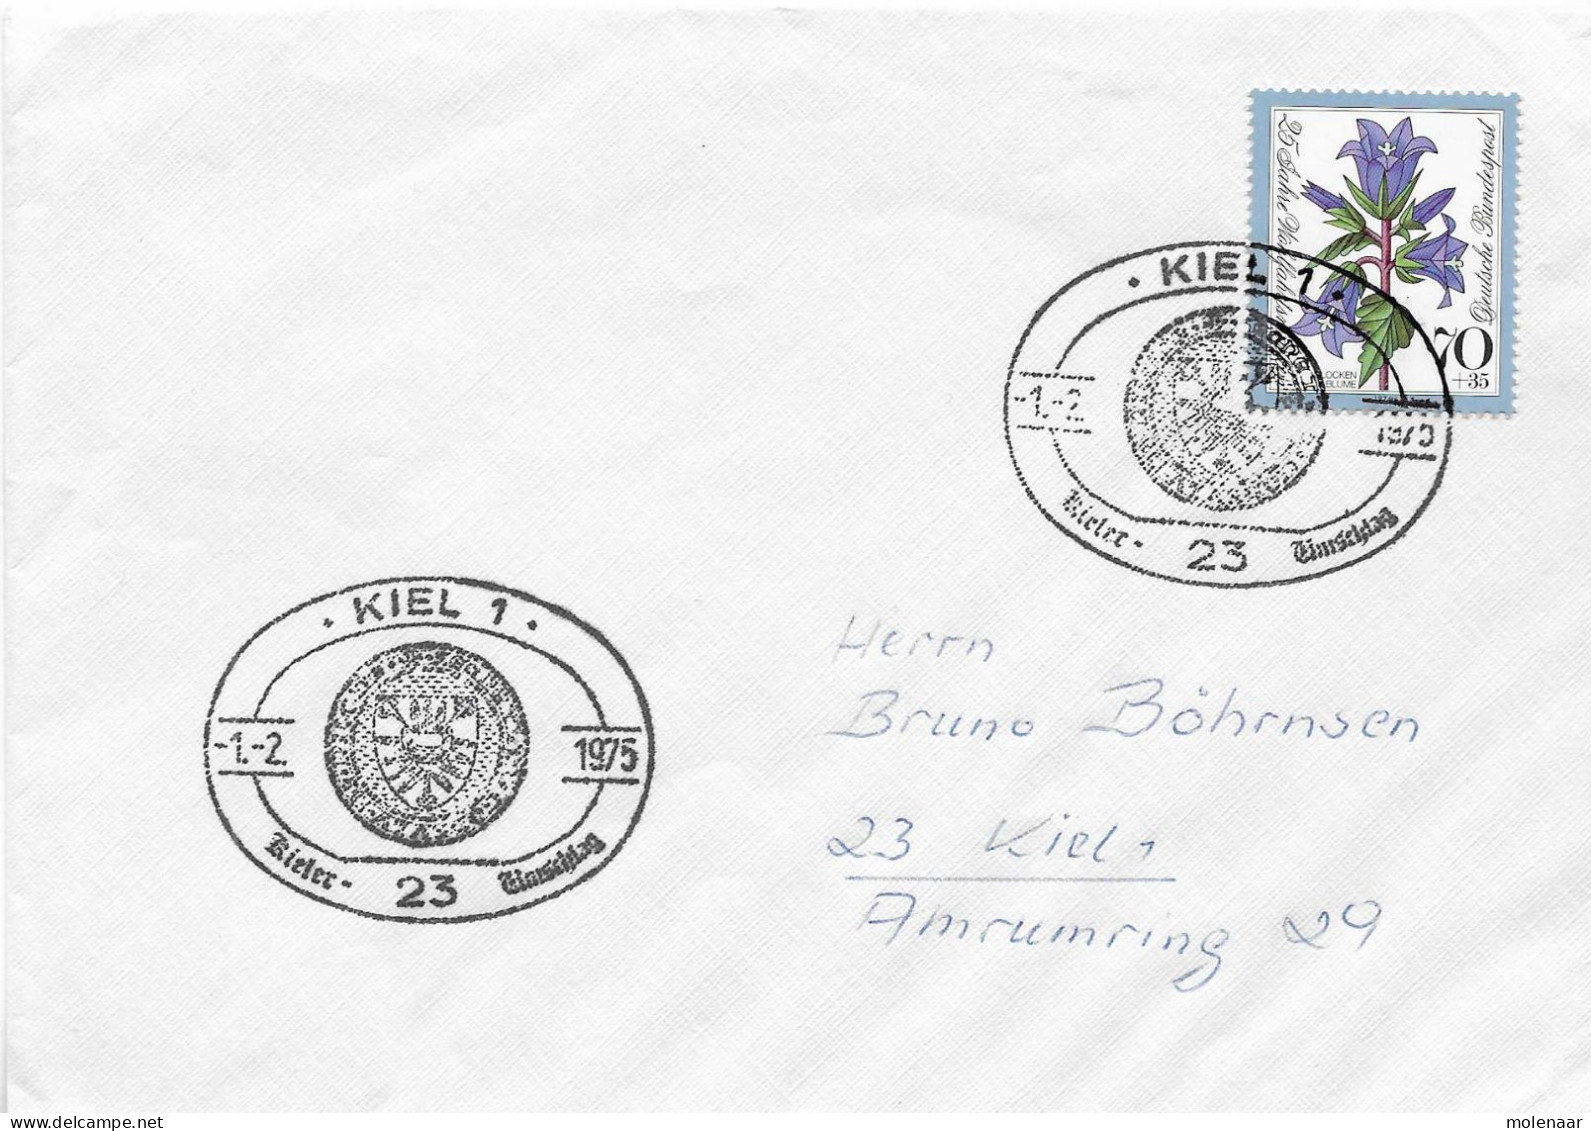 Postzegels > Europa > Duitsland > West-Duitsland > 1970-1979 > Brief Met No. 821 (17299) - Briefe U. Dokumente